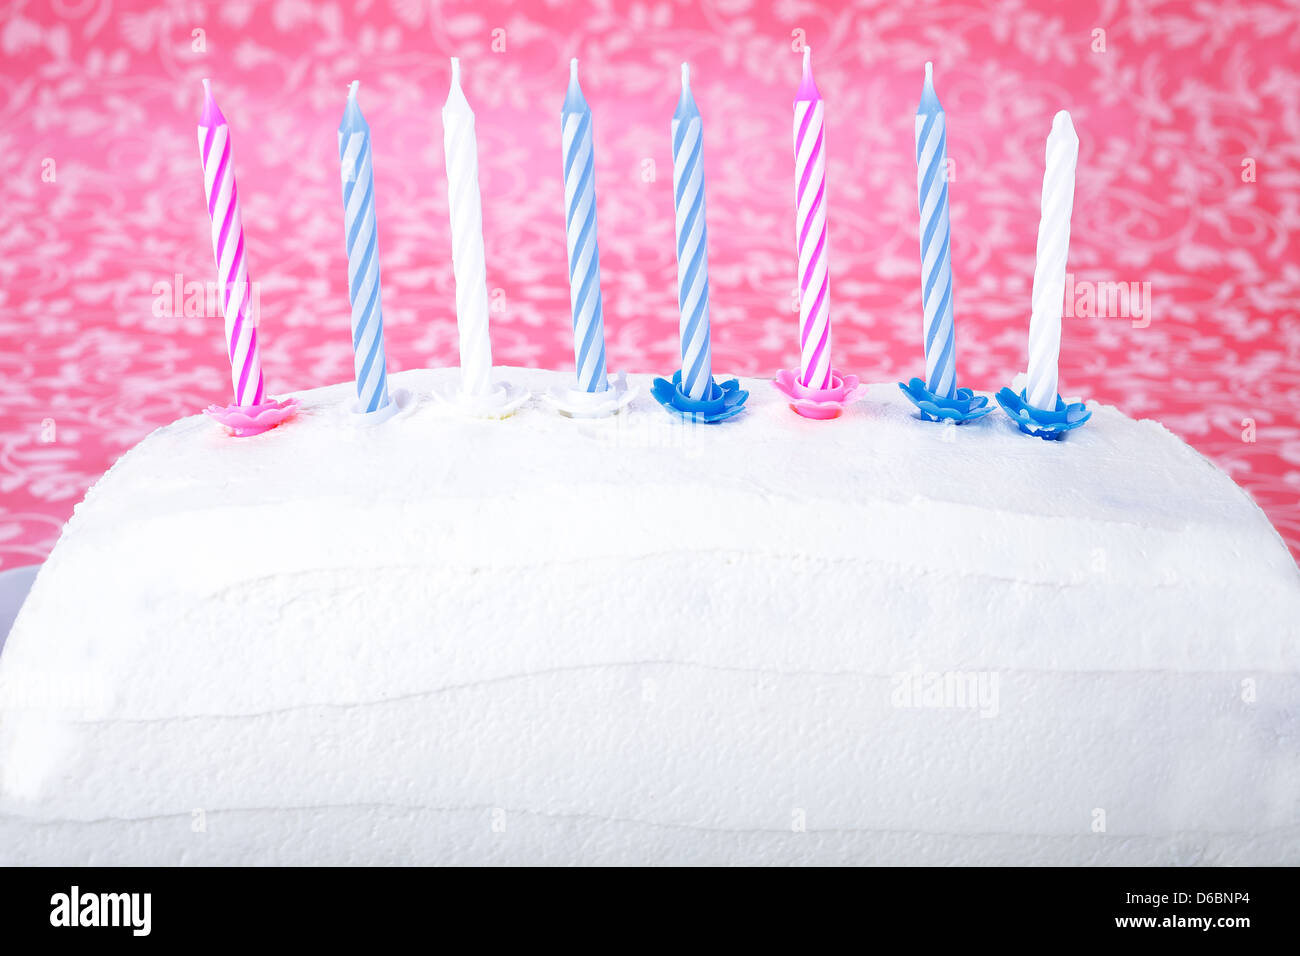 Immagini Stock - Torta Di Compleanno Con Candeline E Coriandoli